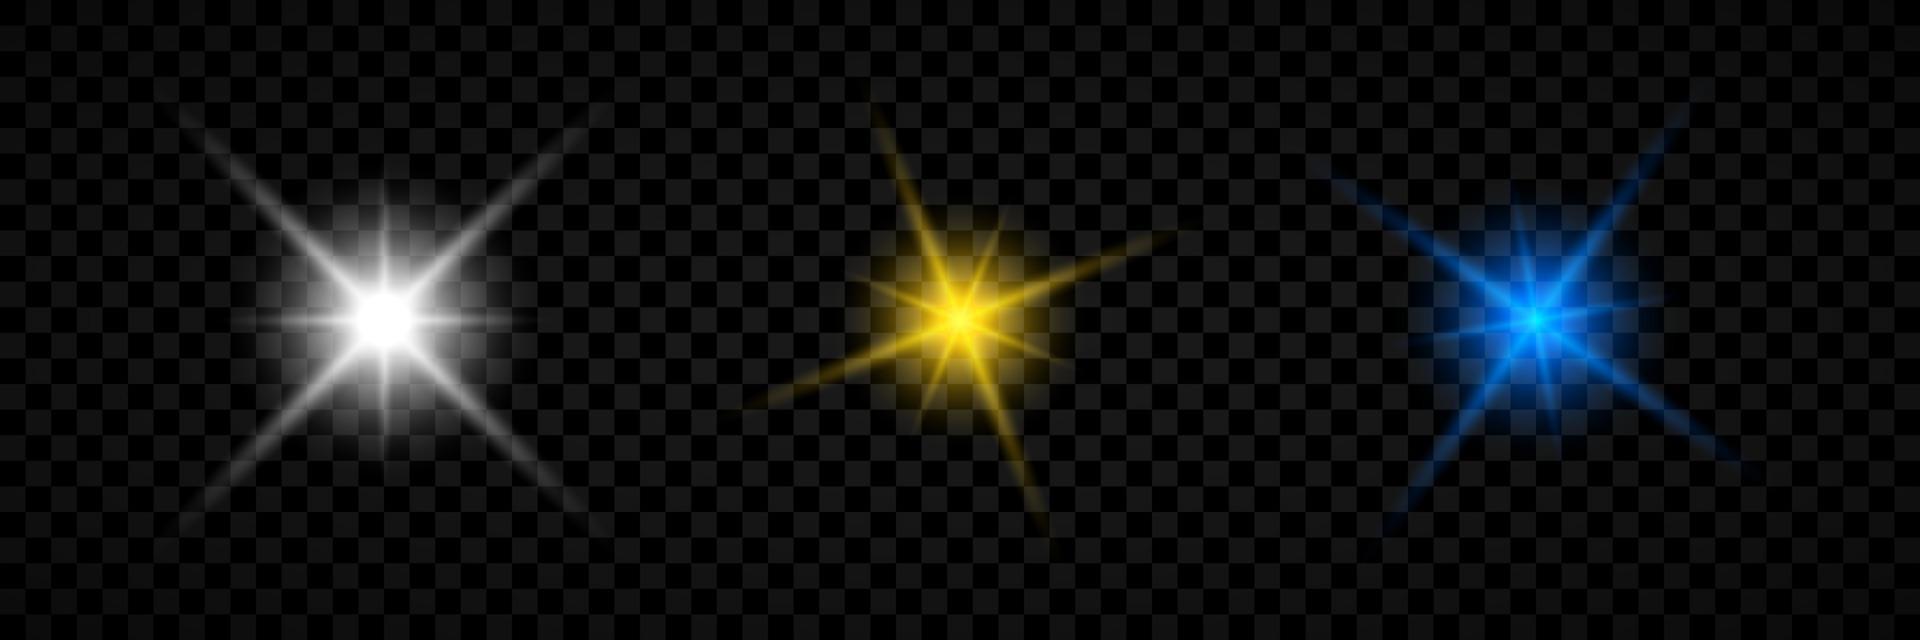 Lichteffekt von Lens Flares. satz von drei weiß, gelb und blau leuchtenden lichtern starburst-effekten mit funkeln auf einem transparenten hintergrund. Vektor-Illustration vektor